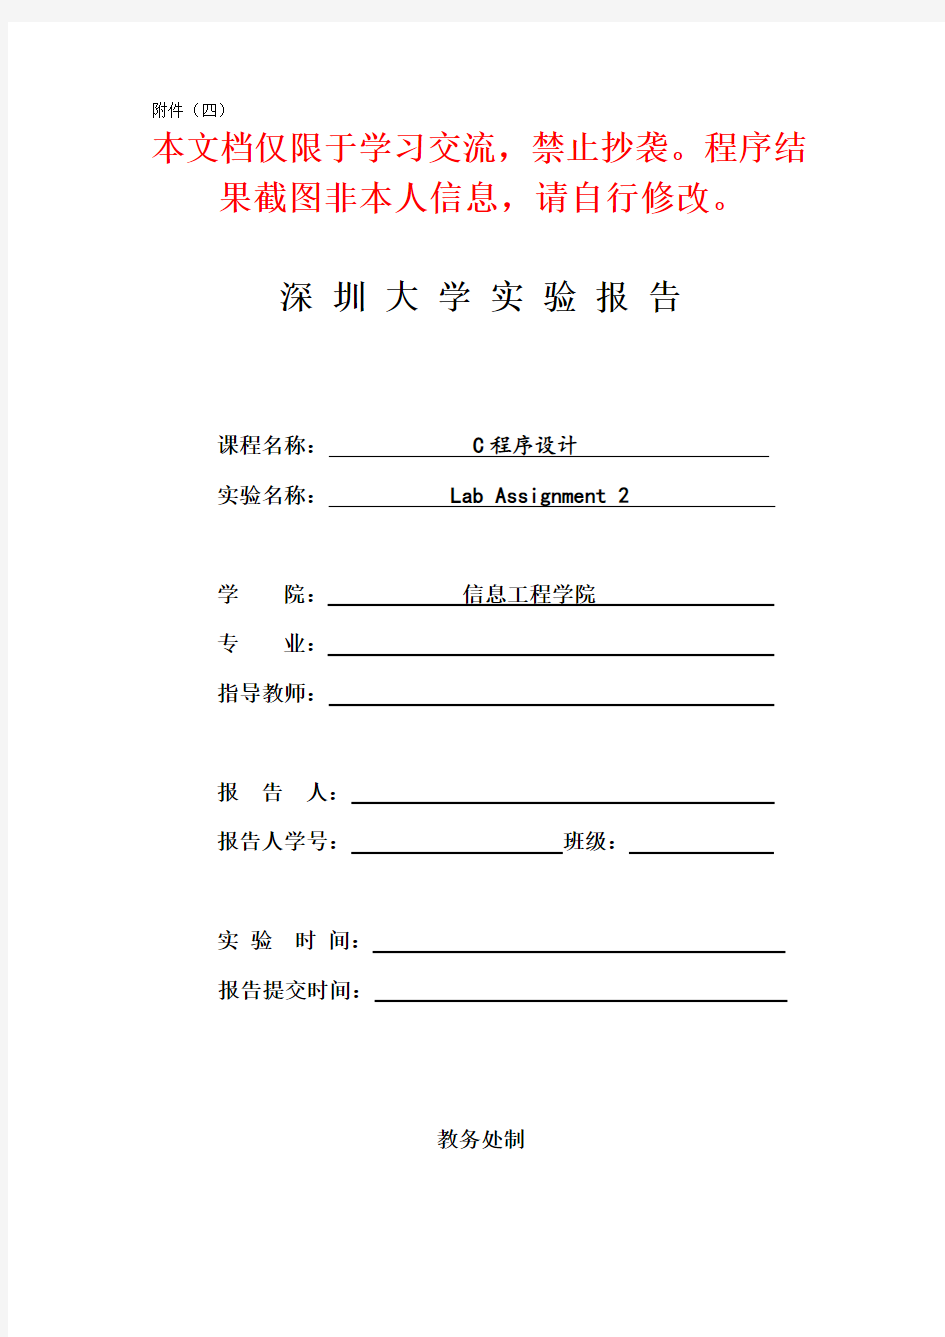 深圳大学C程序设计Lab Assignment2实验报告